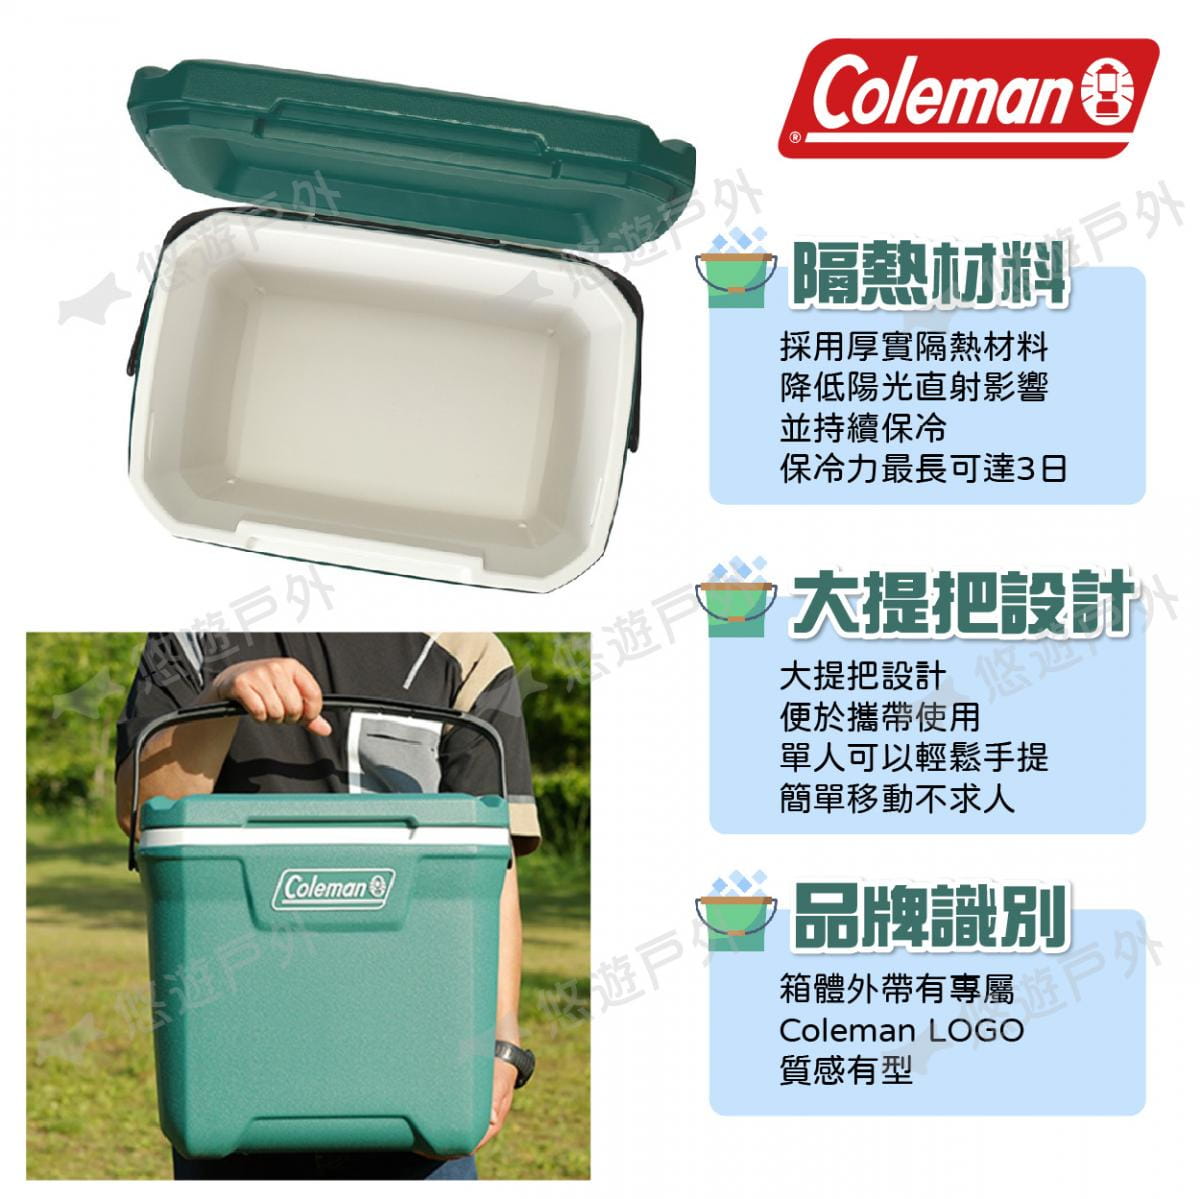 【Coleman】26.5L XTREME永恆綠手提冰箱 CM-37321 悠遊戶外 3